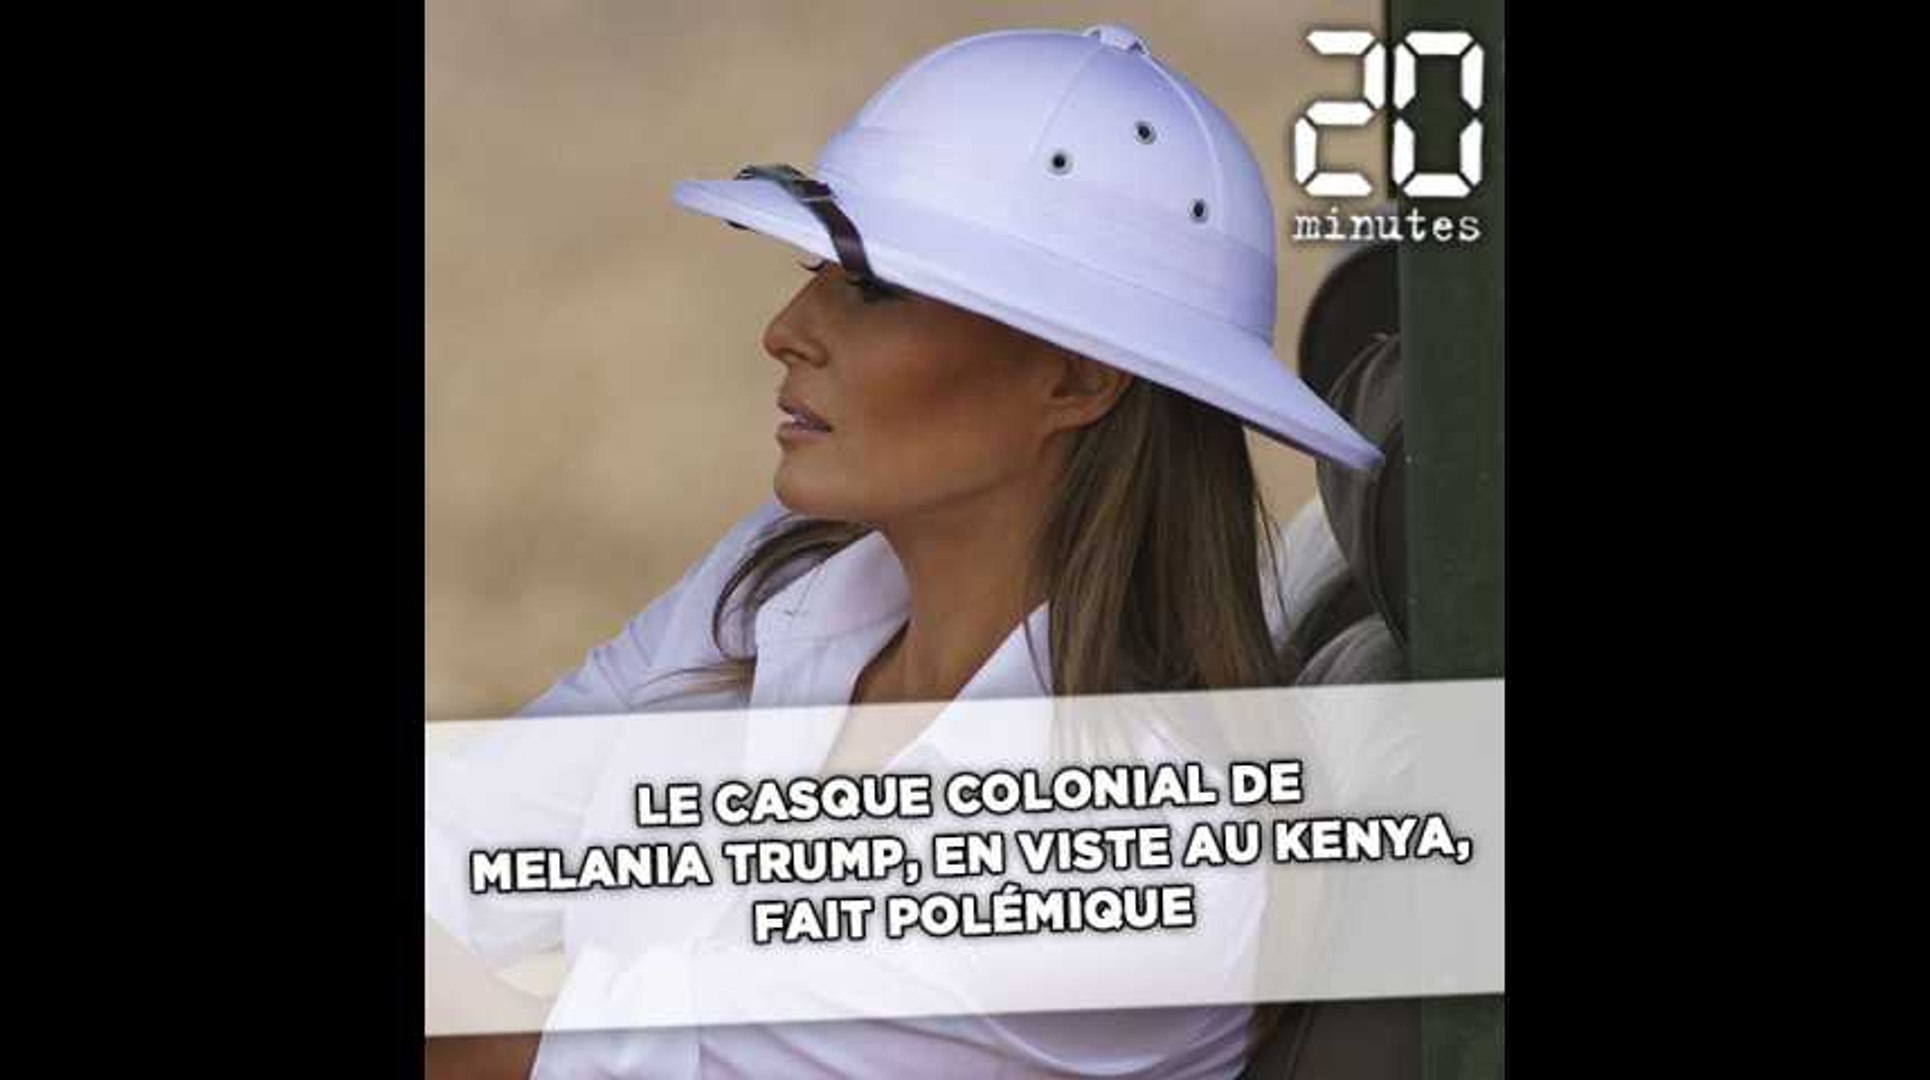 Le casque colonial de Melania Trump, en visite au Kenya, indigne les  internautes - Vidéo Dailymotion